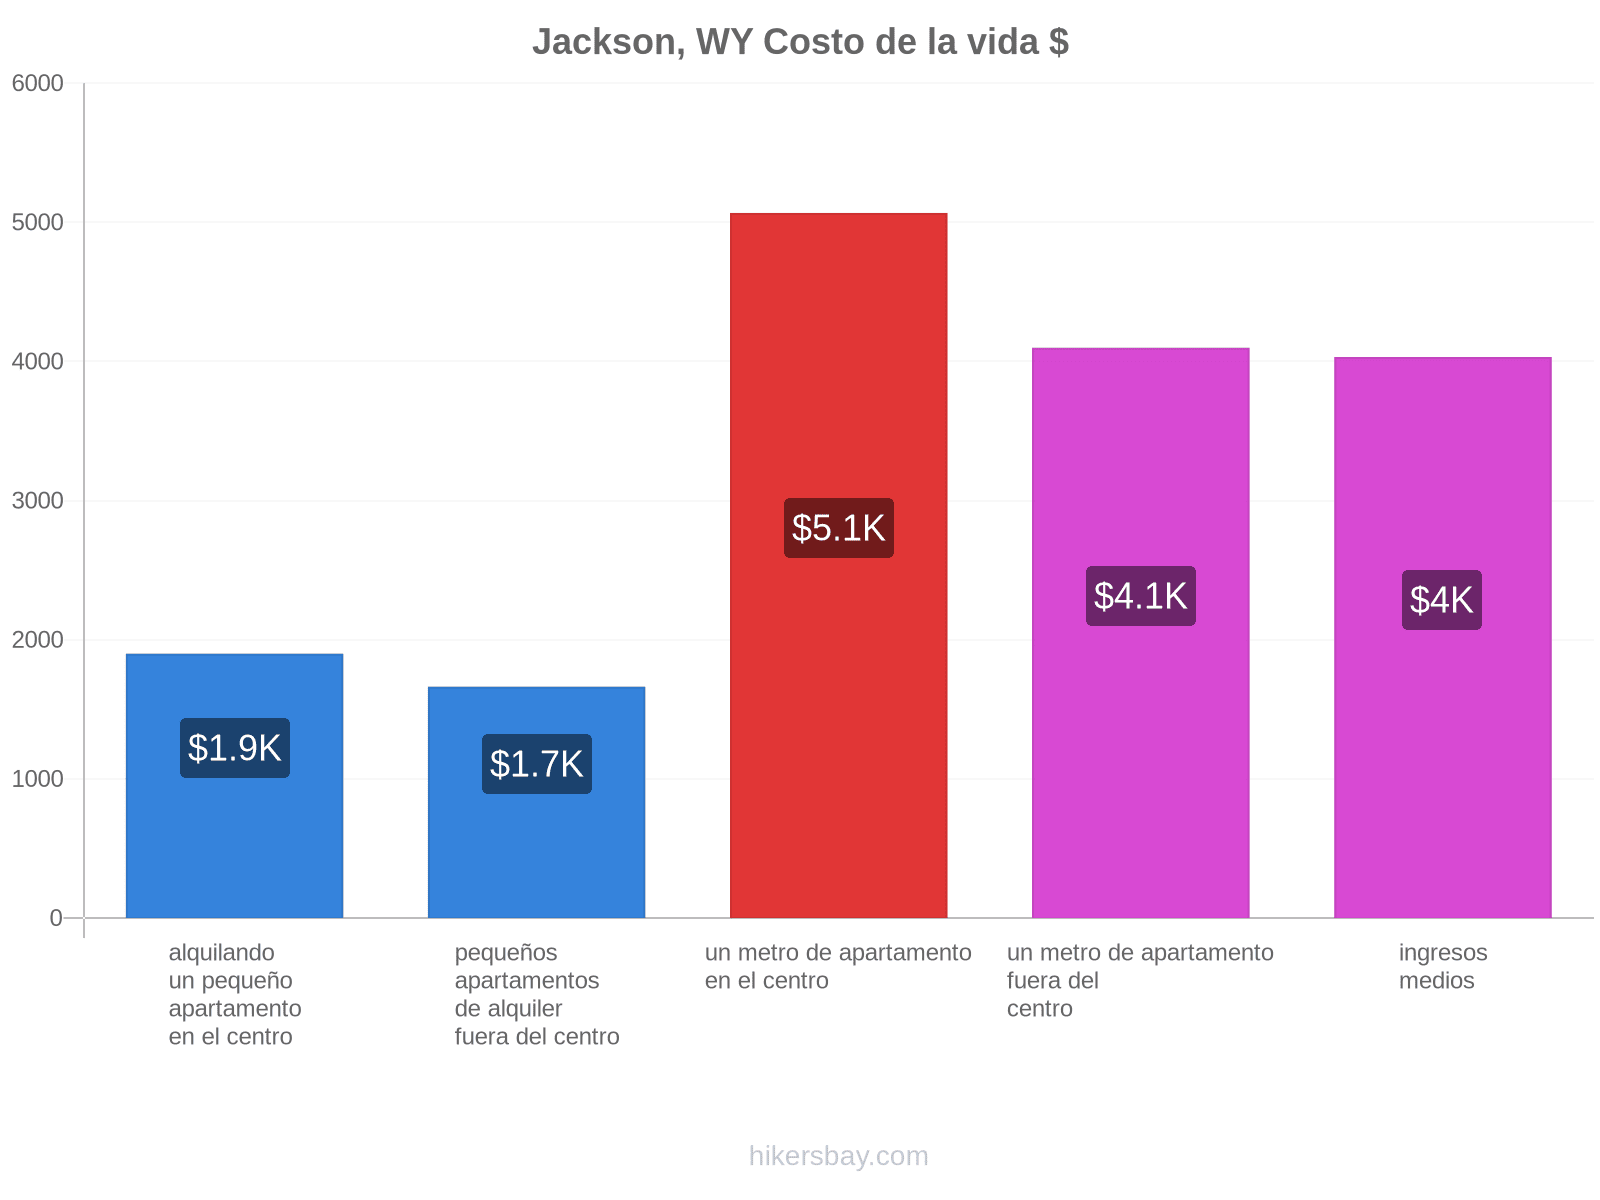 Jackson, WY costo de la vida hikersbay.com